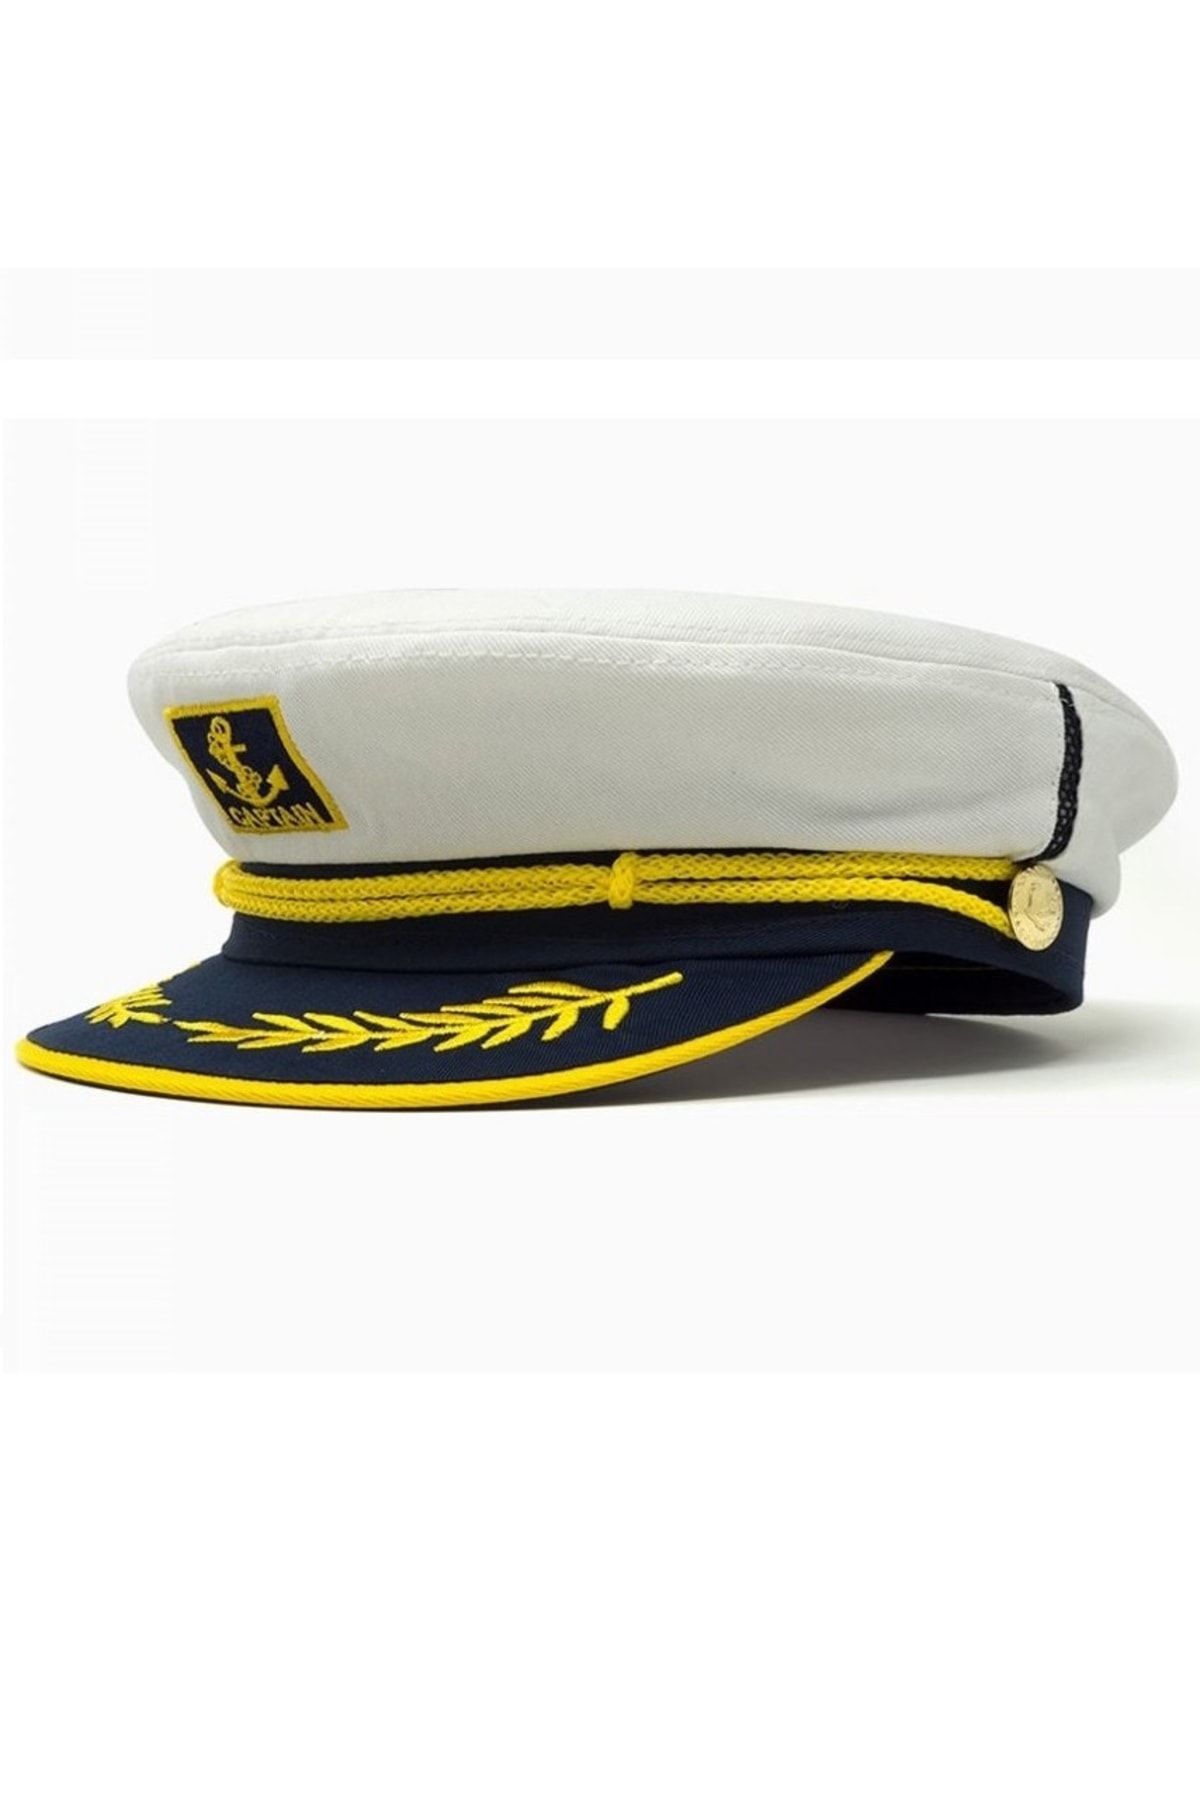 tahtakale marketi Denizci Kaptan Şapkası Beyaz 1. Kalite Yetişkin